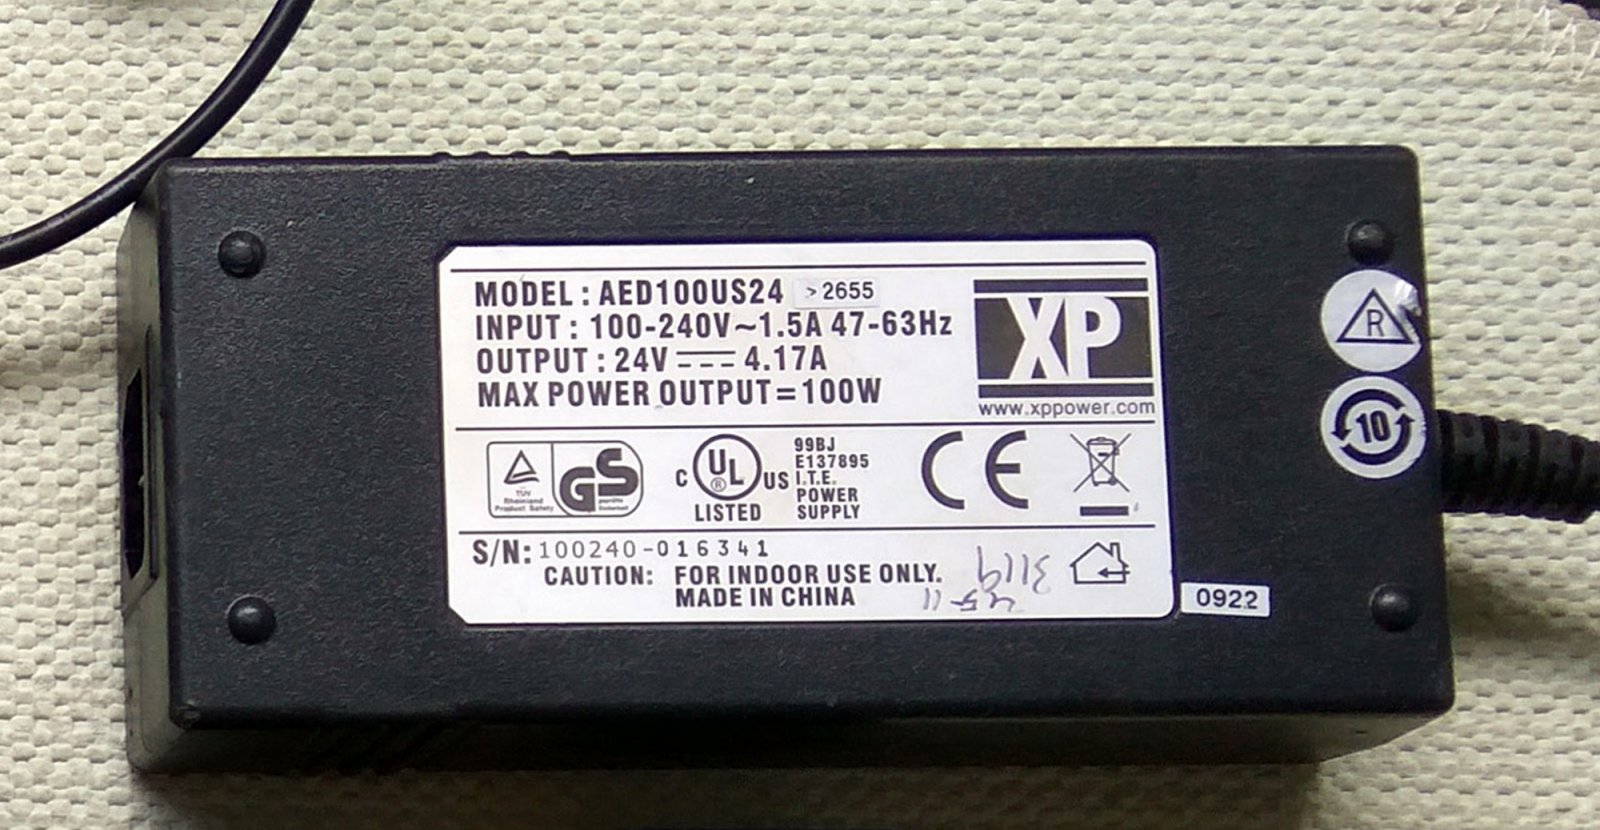 Nguon 24V XPpower.jpg